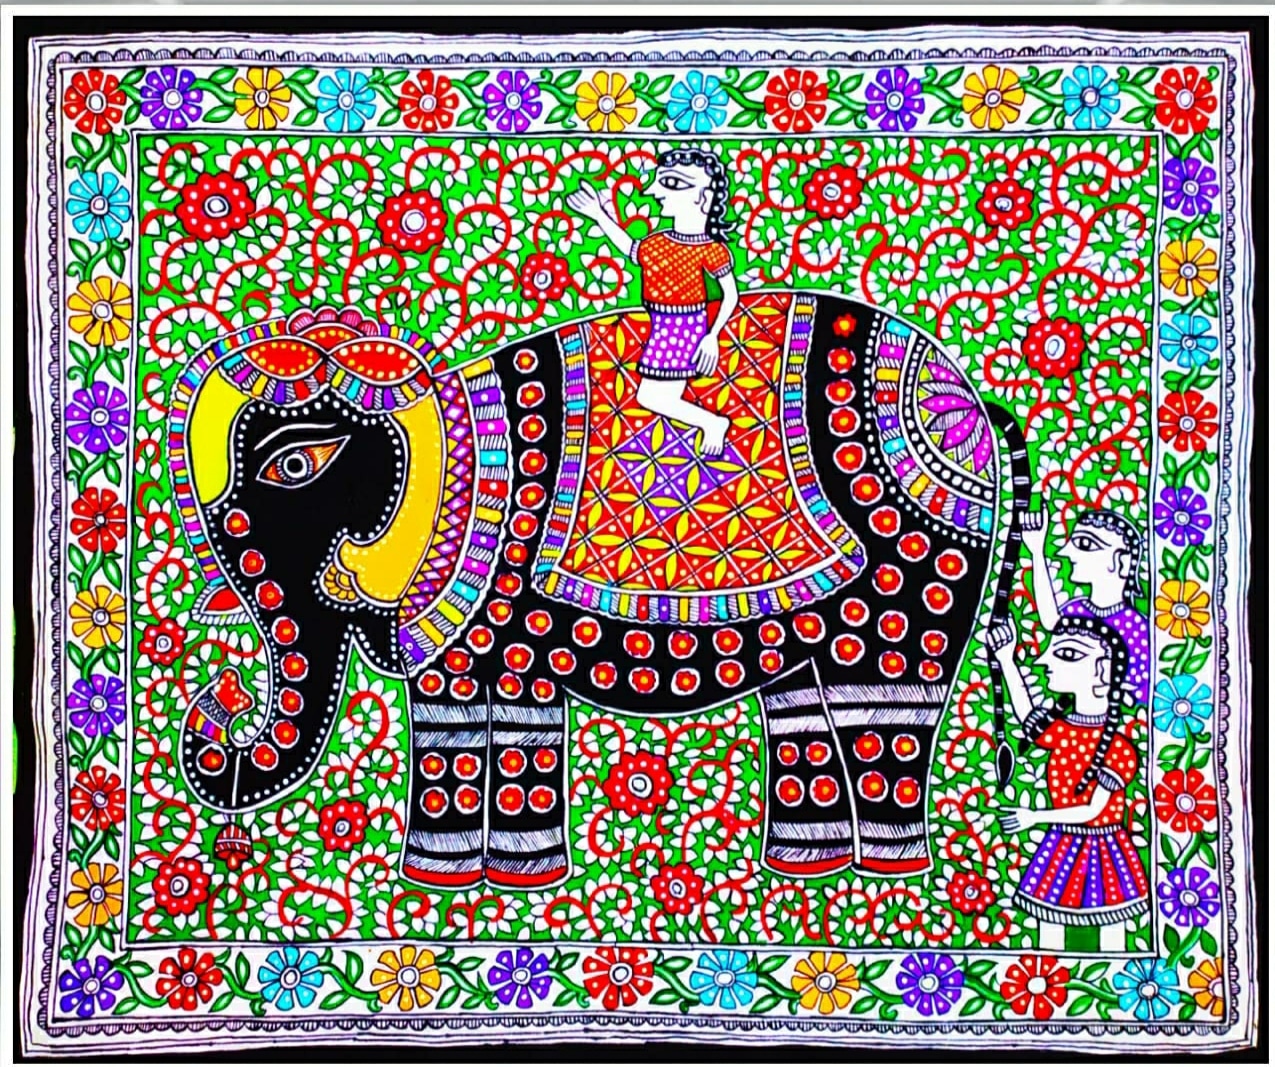 animal art royal elephant ride jaipur rajasthan handmade painting by artist  amer fort Jaipur rajasth Greeting Card by M B Sharma